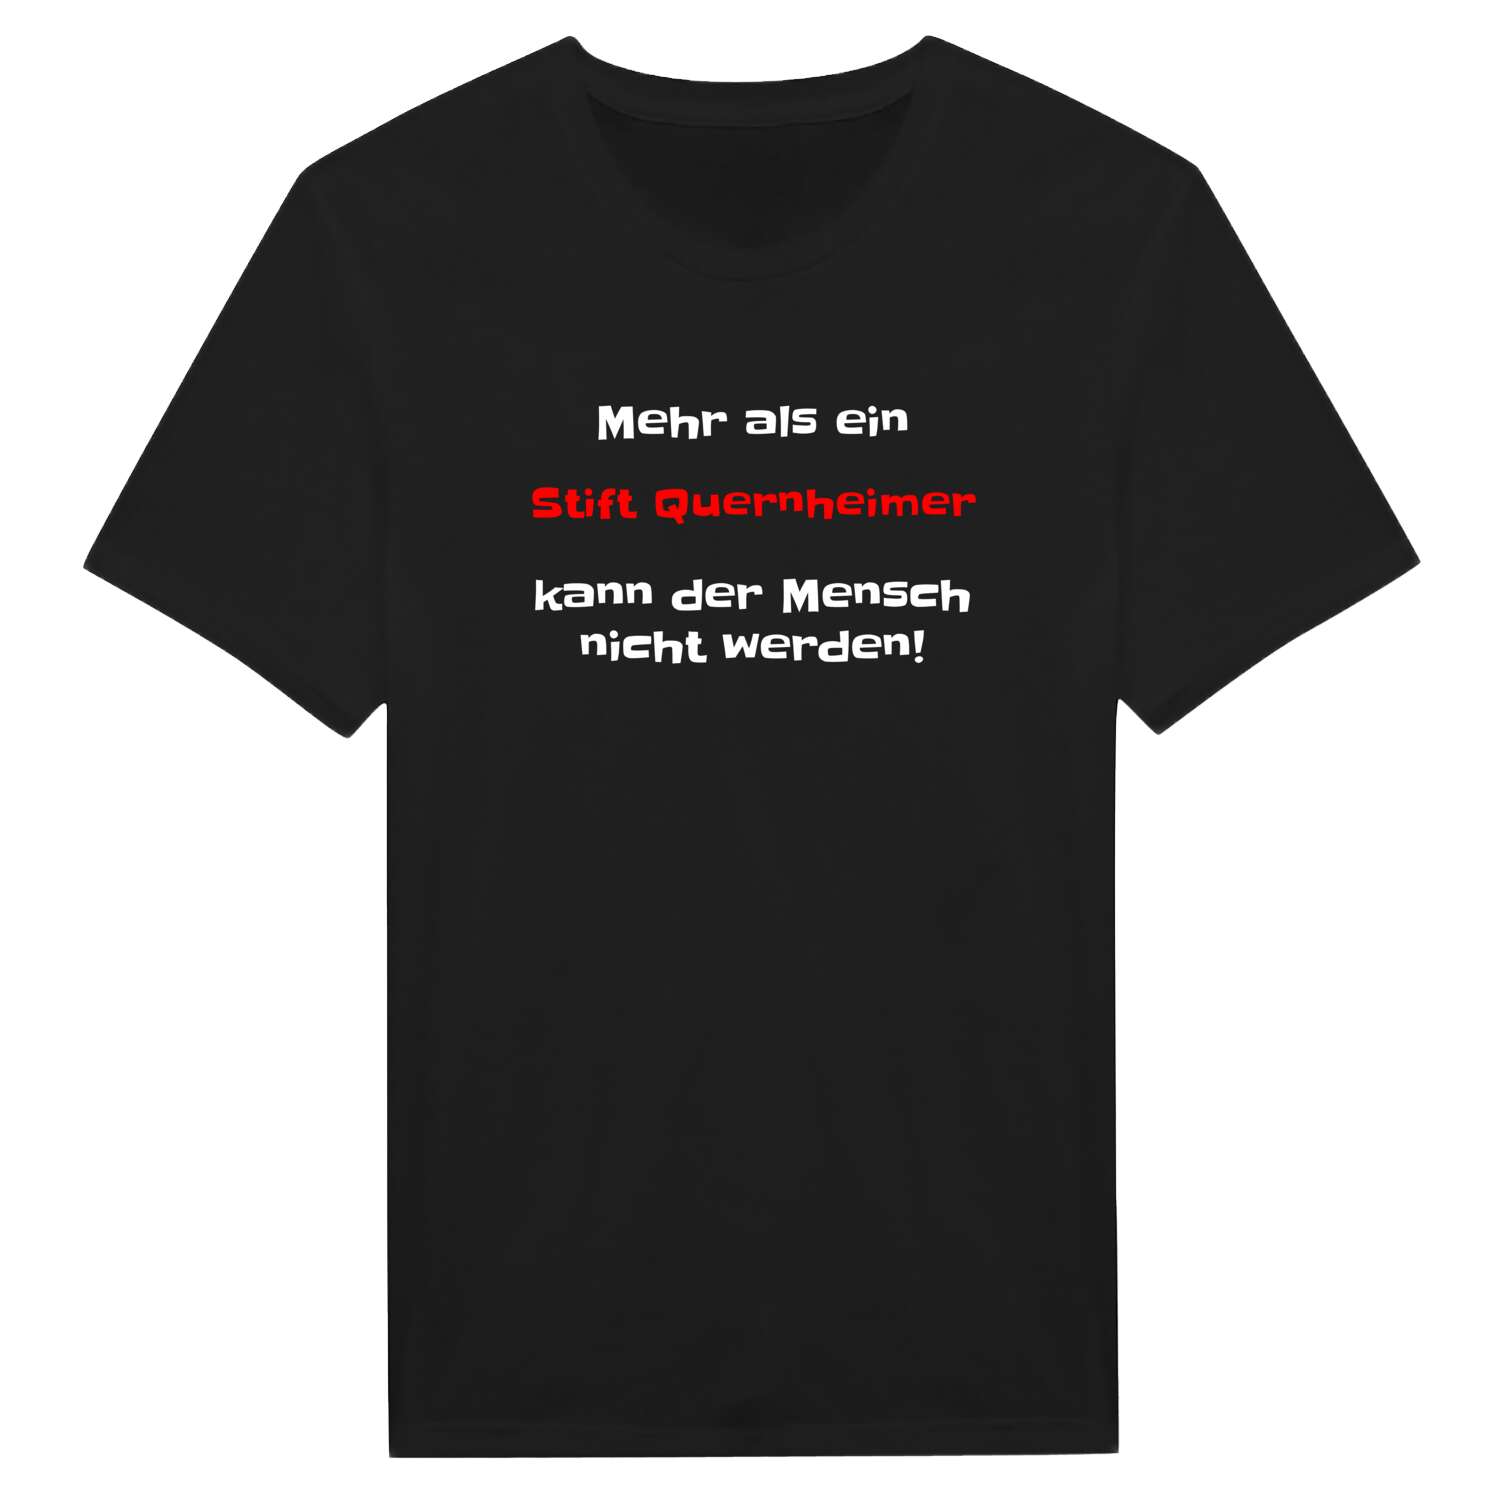 Stift Quernheim T-Shirt »Mehr als ein«